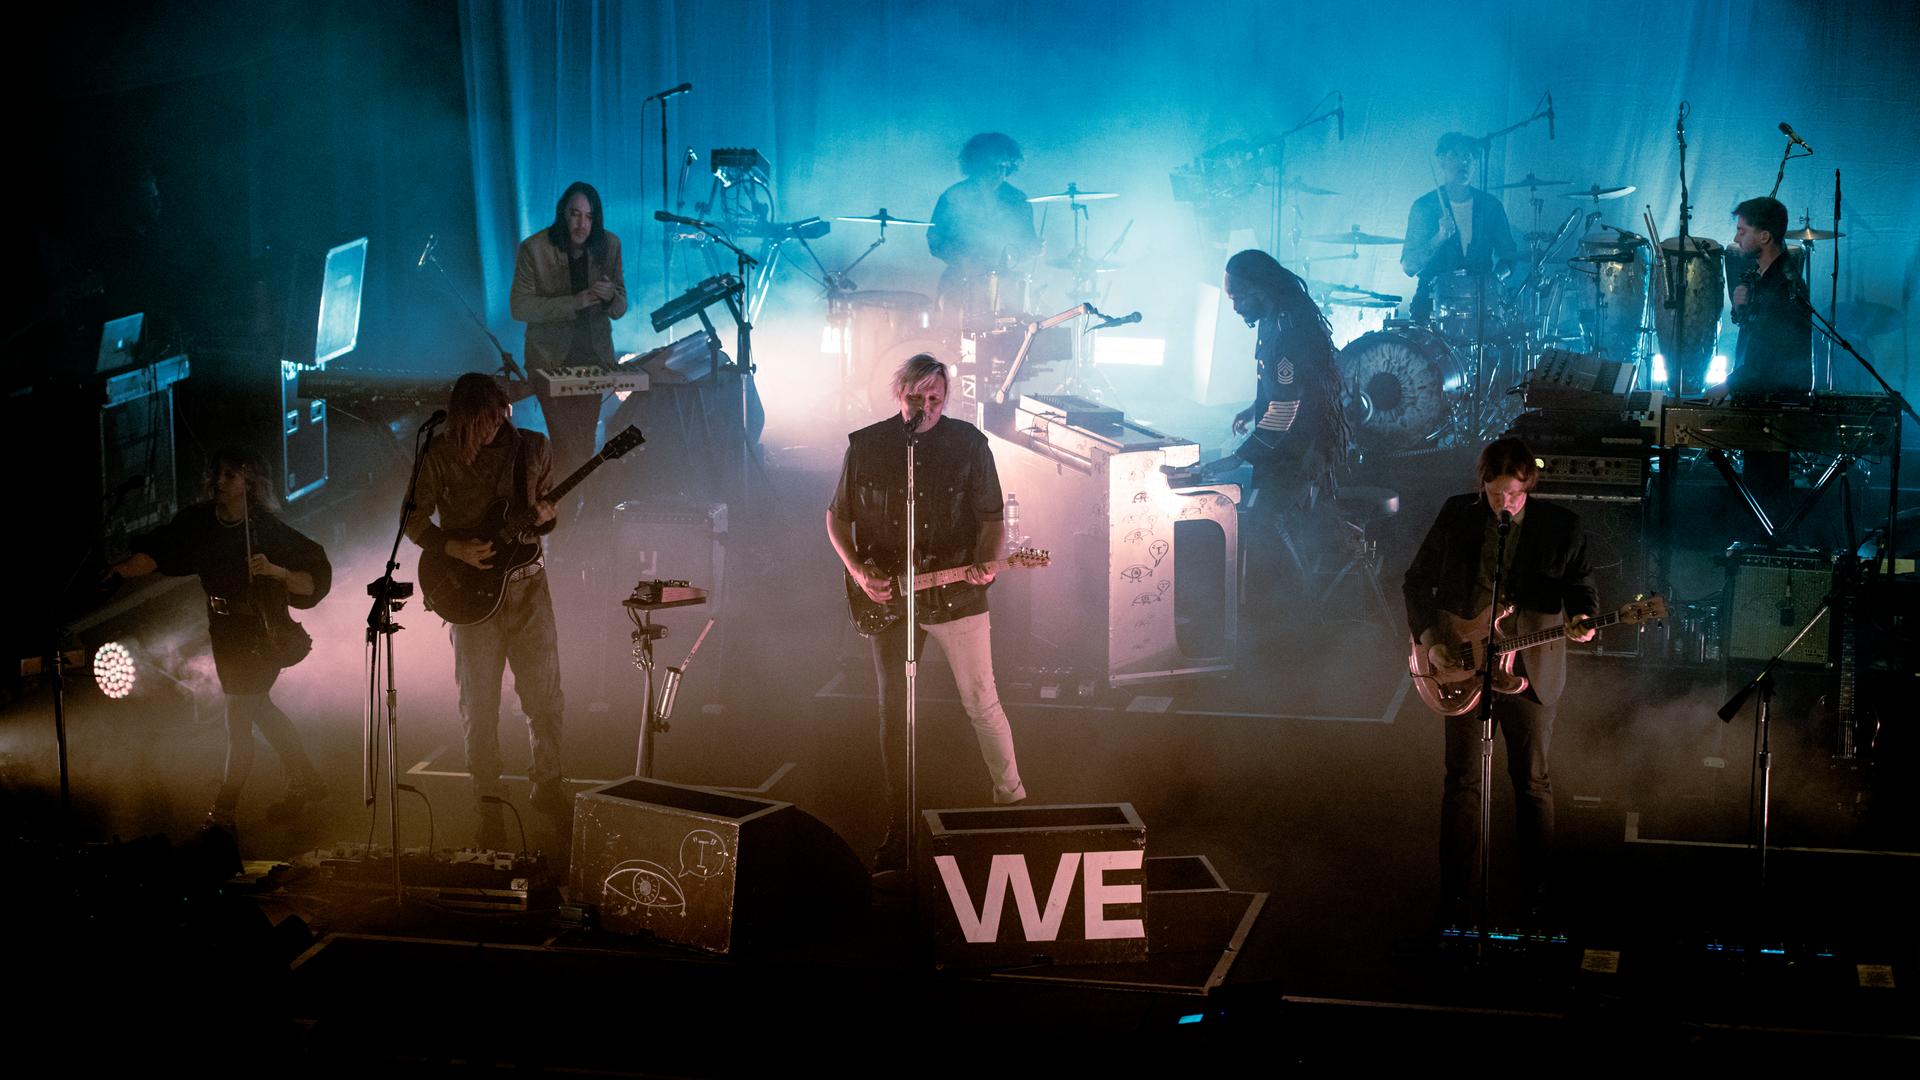 Die kanadische Indie-Band Arcade Fire bei einem Konzert in London im April 2022. Die Bühne ist dunkel, einige Lichter scheinen durch den Nebel. Am Anfang der Bühne steht in großen Buchstaben das Wort "We". Das Bild ist leicht von oben aufgenommen. 